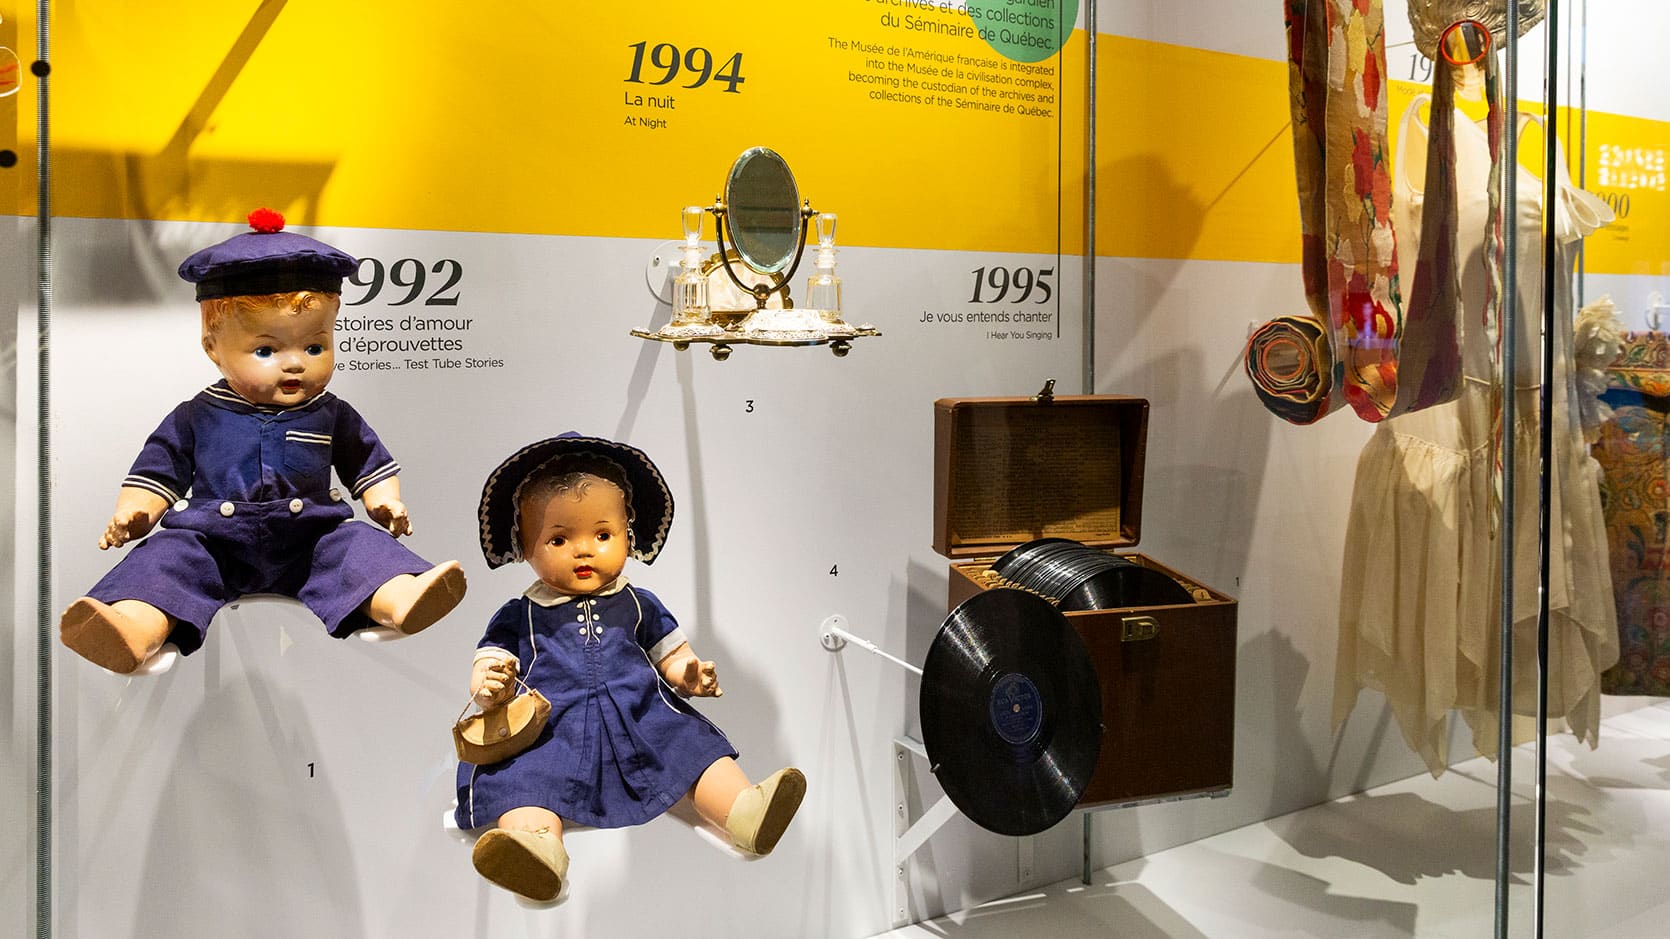 Objets en vitrine alignés sur une ligne du temps représentants les expositions marquantes du Musée. On y voit des poupées, un miroir, un boîte de disques et une robe.